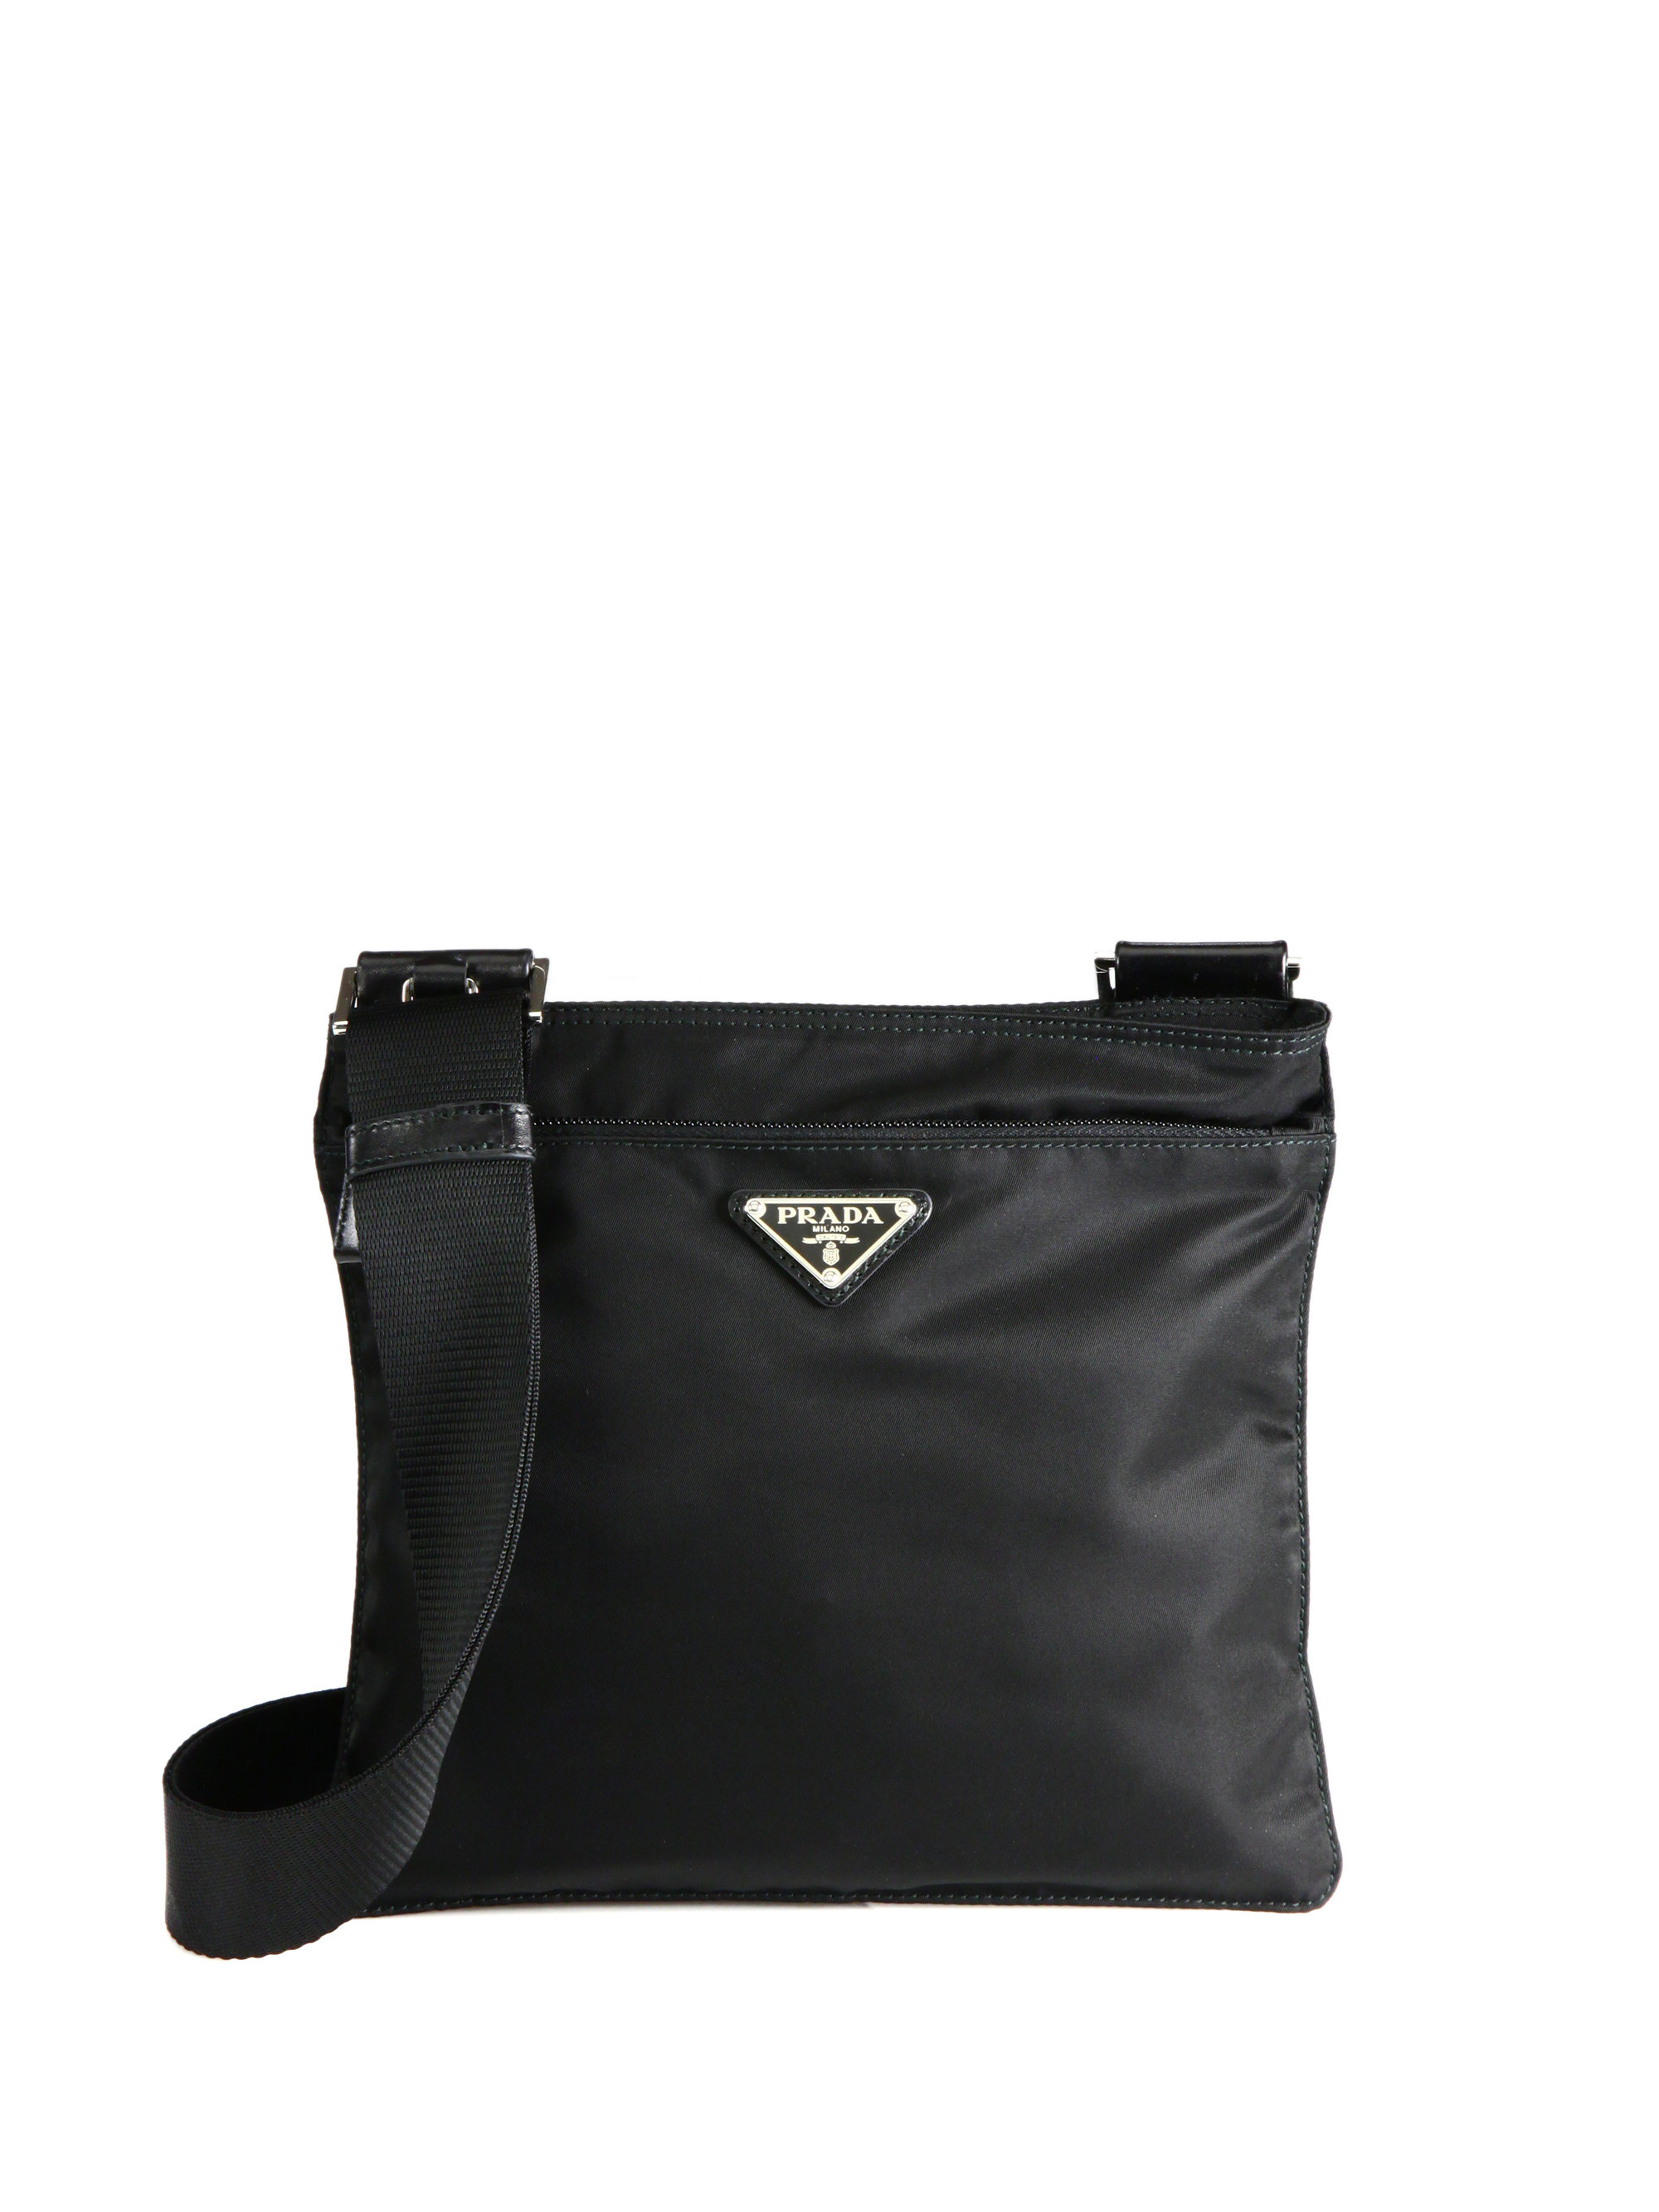 Prada Nylon Messenger Bag in Black | Lyst